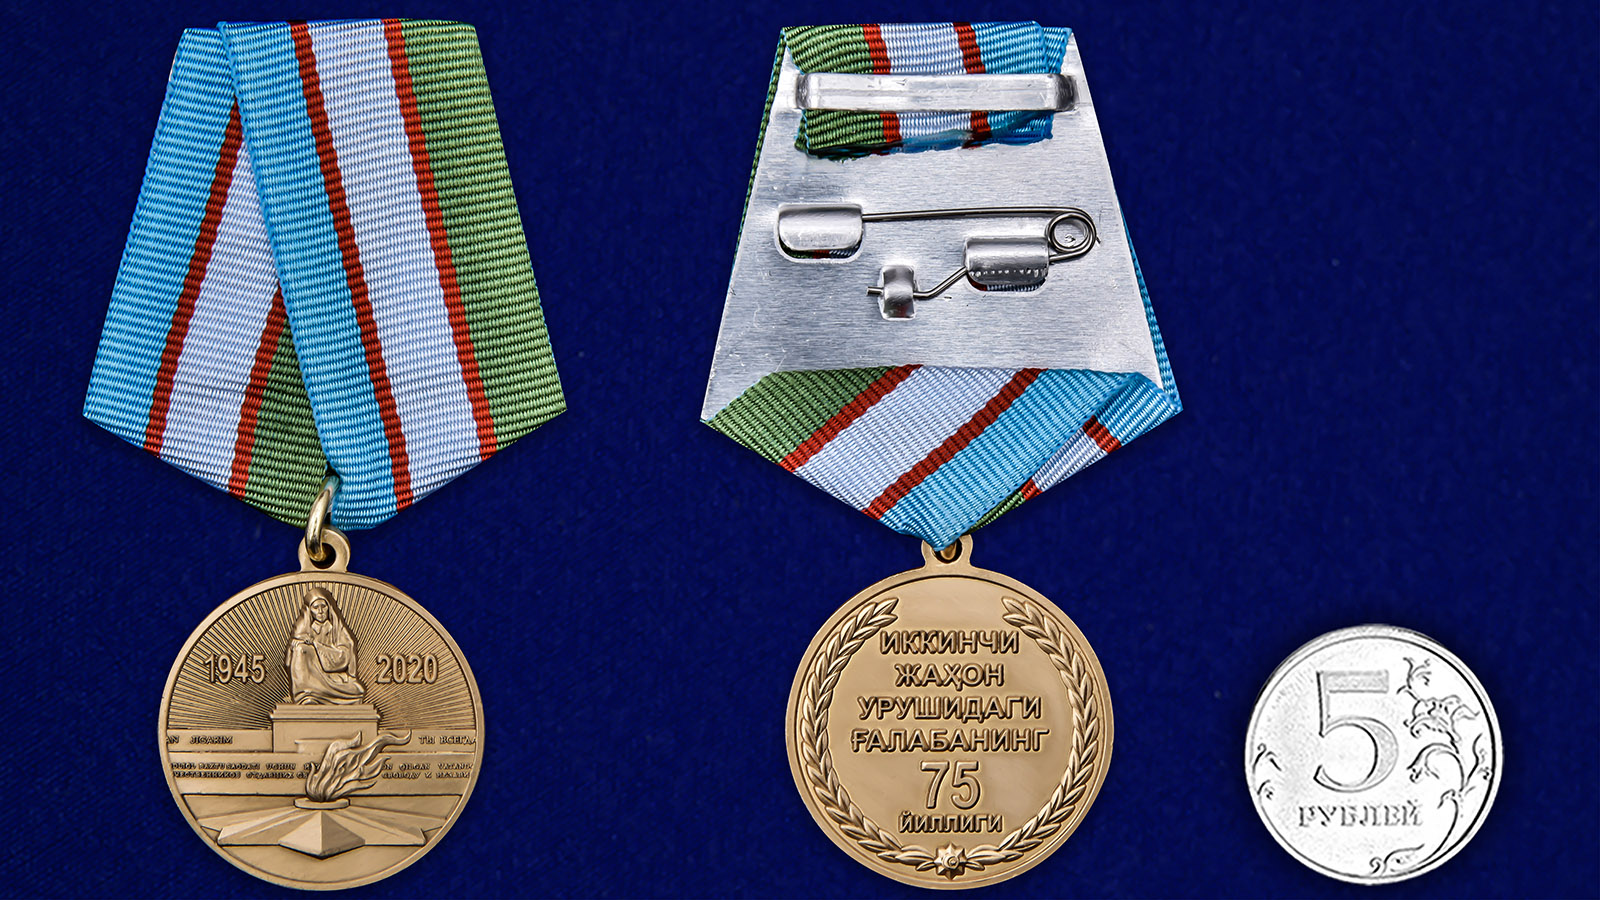 Купить медаль Узбекистана День Победы во Второй мировой войне на подставке выгодно